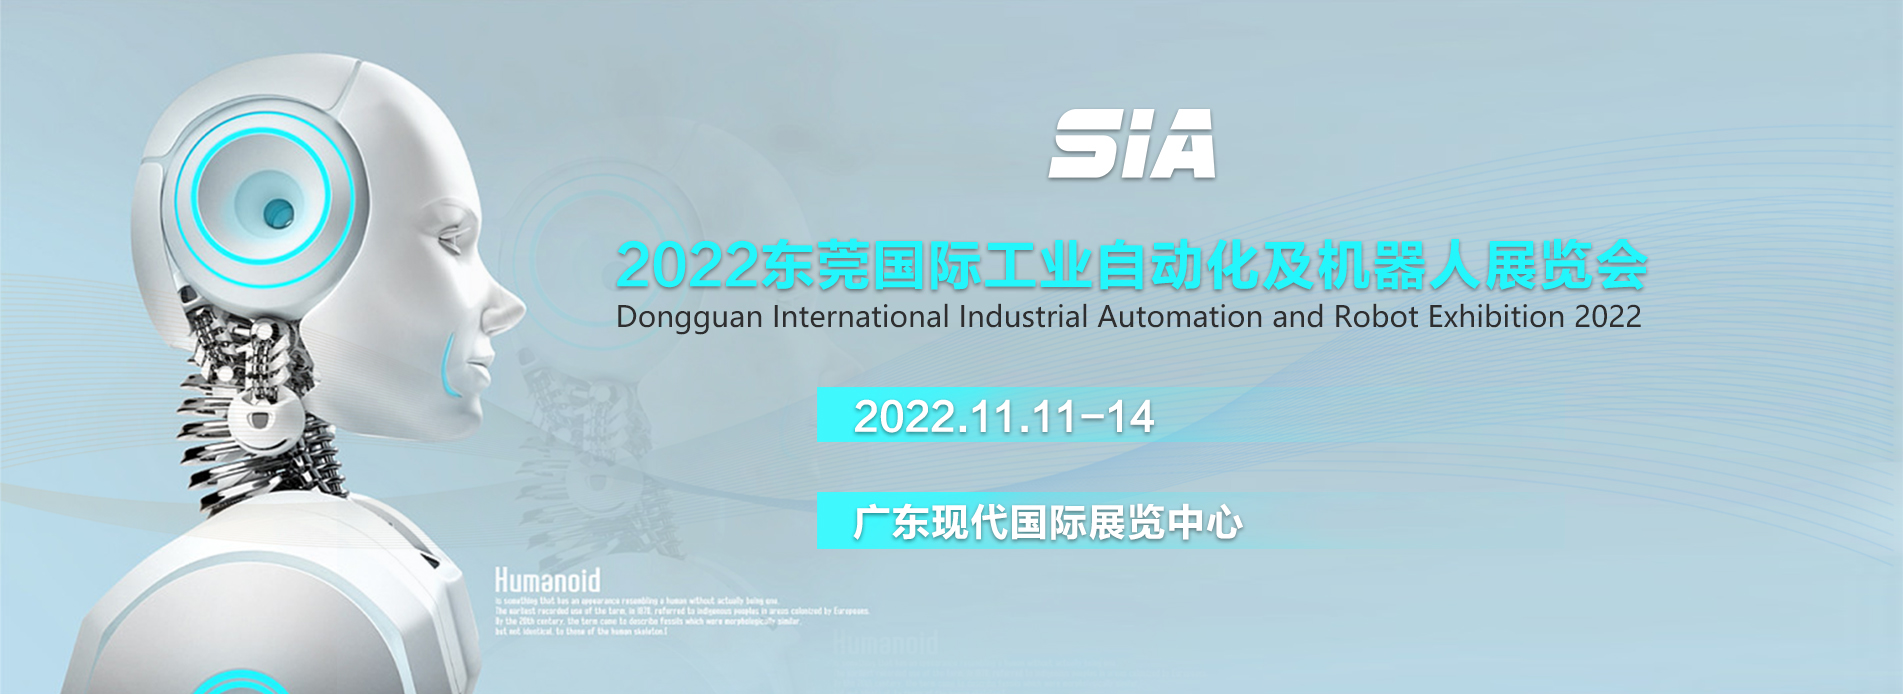 2020东莞国际工业自动化及机器人展览会